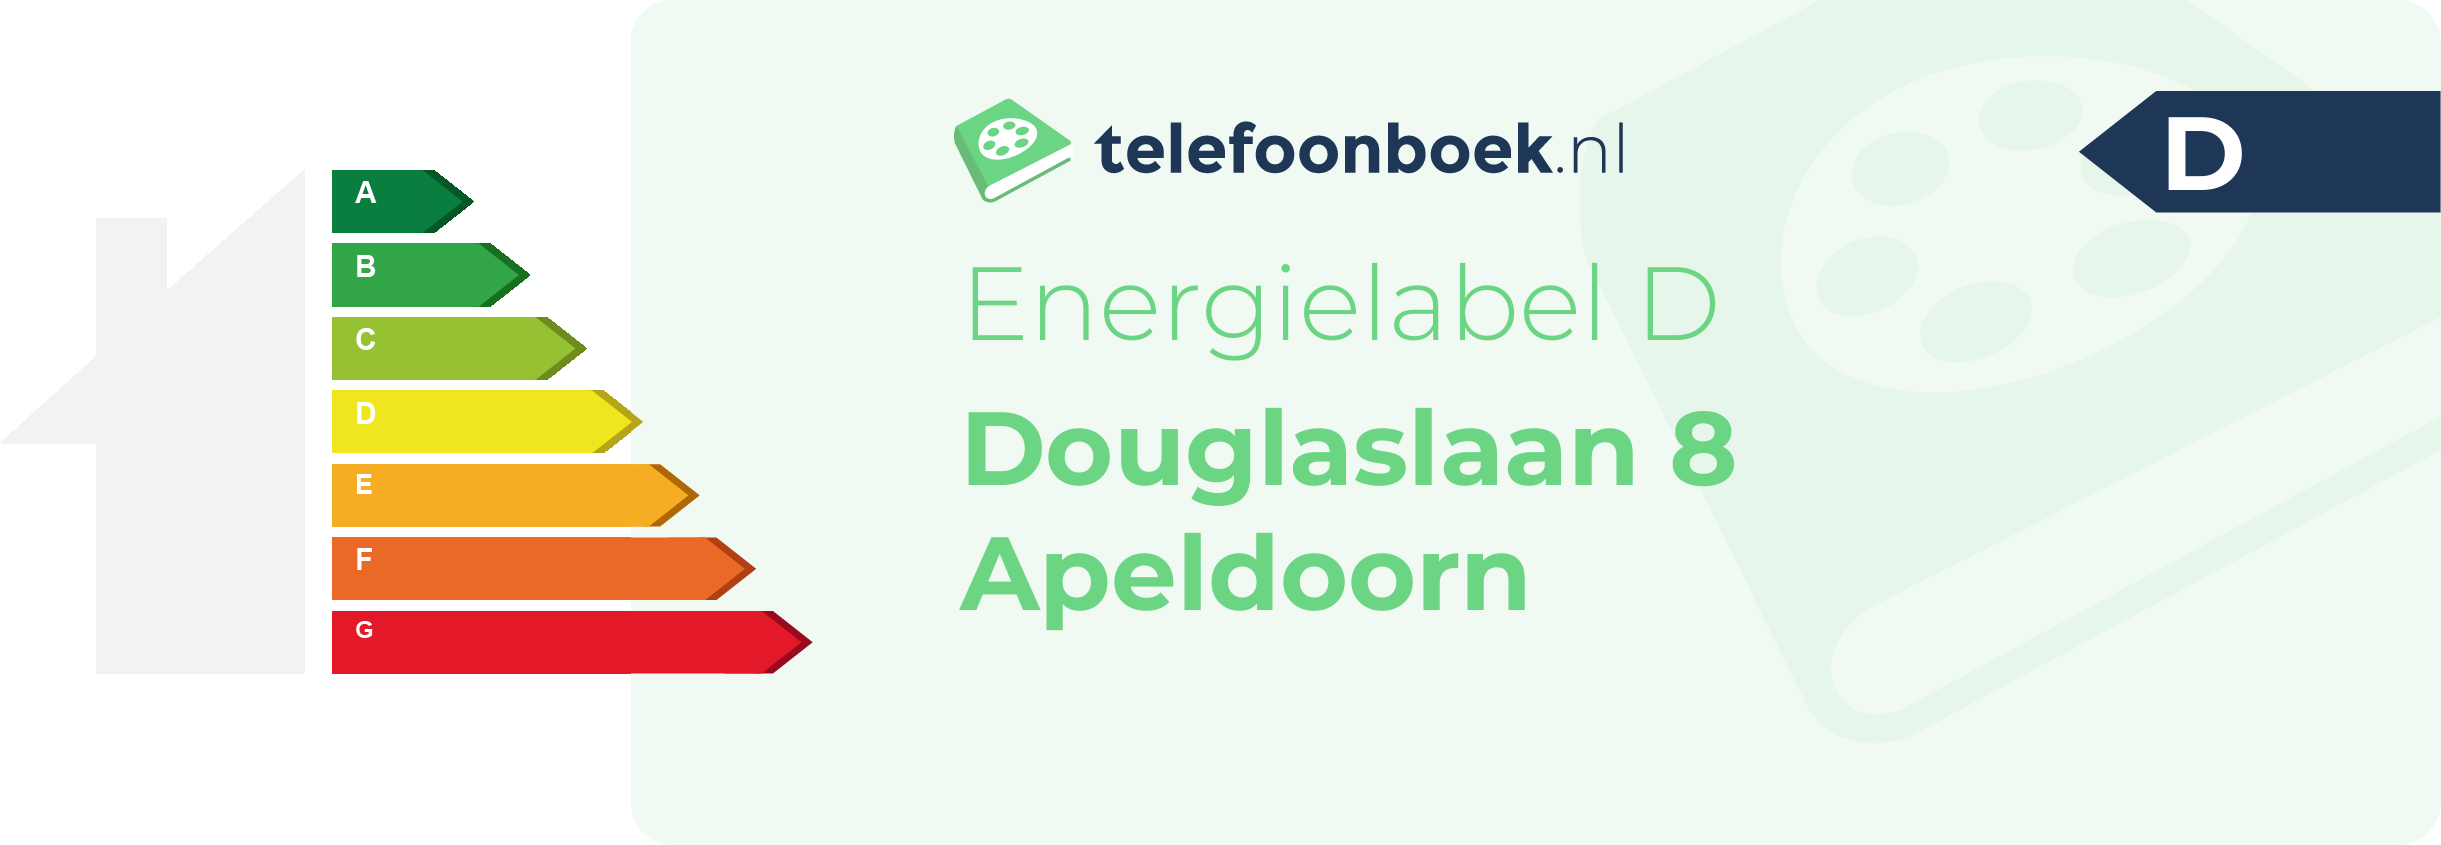 Energielabel Douglaslaan 8 Apeldoorn